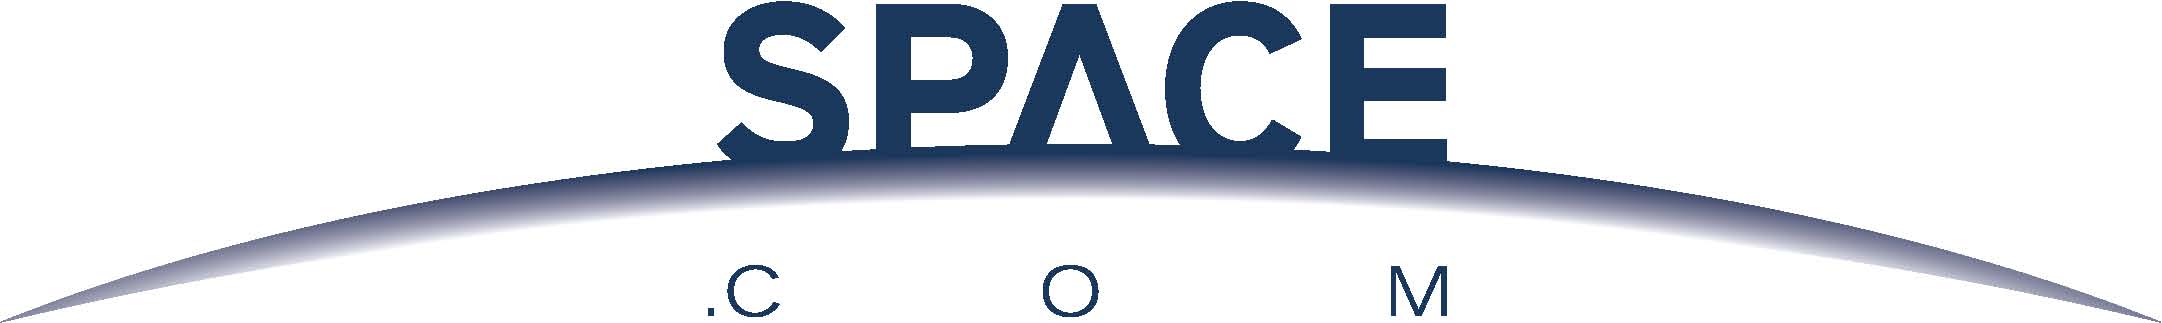 Space.com Logo - Logos of 